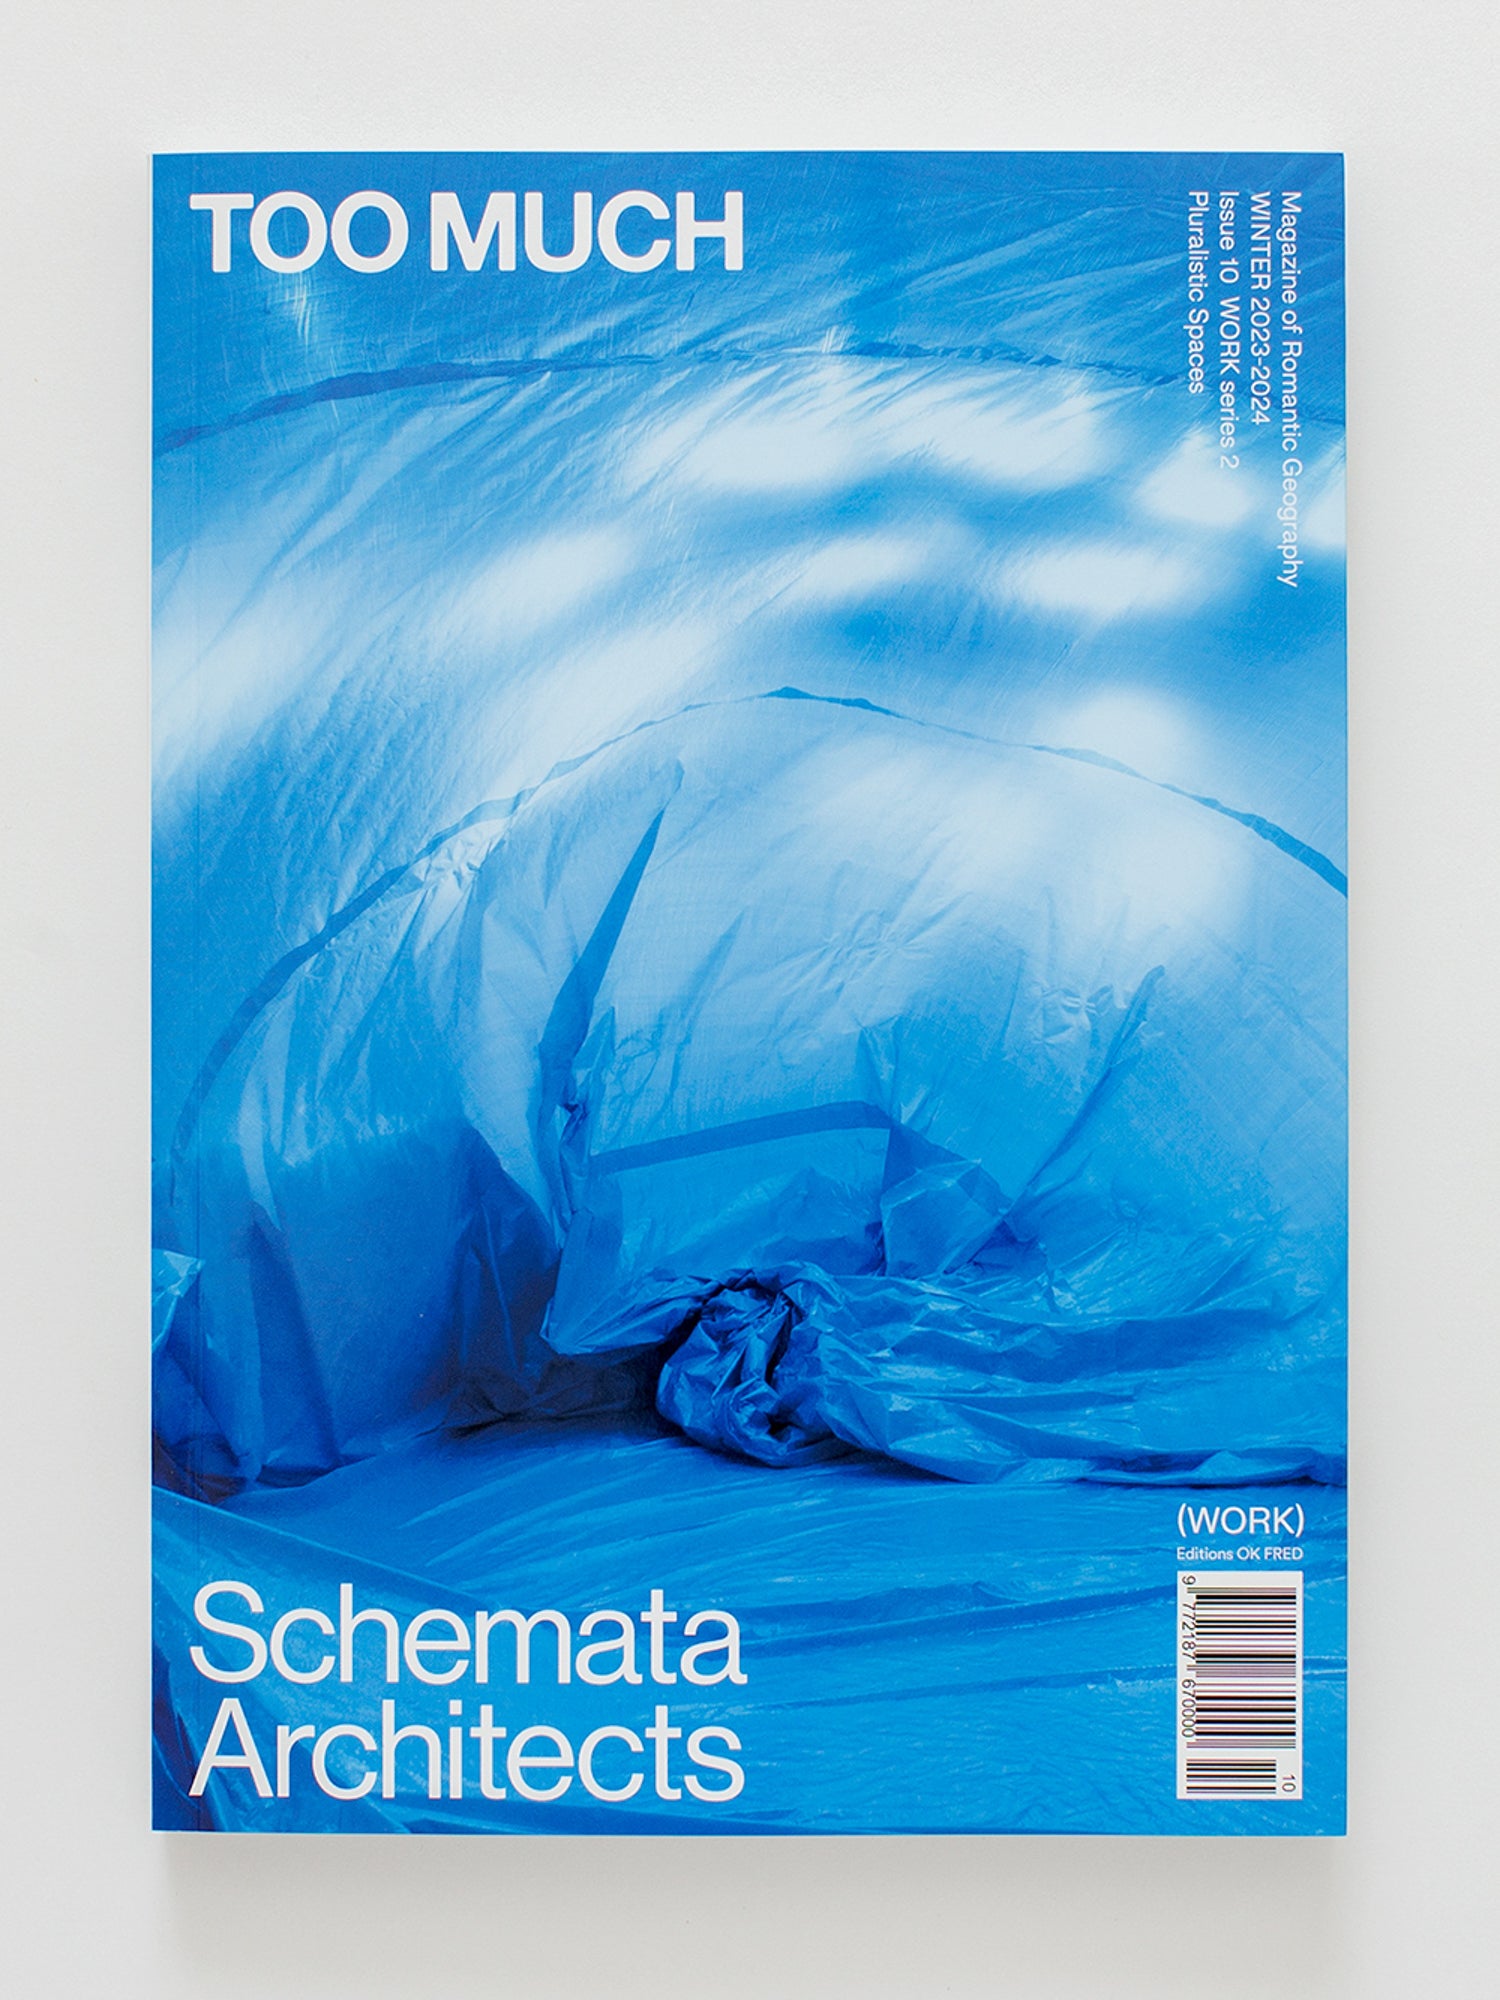 TOO MUCH Magazine Issue 10, Schemata Architects